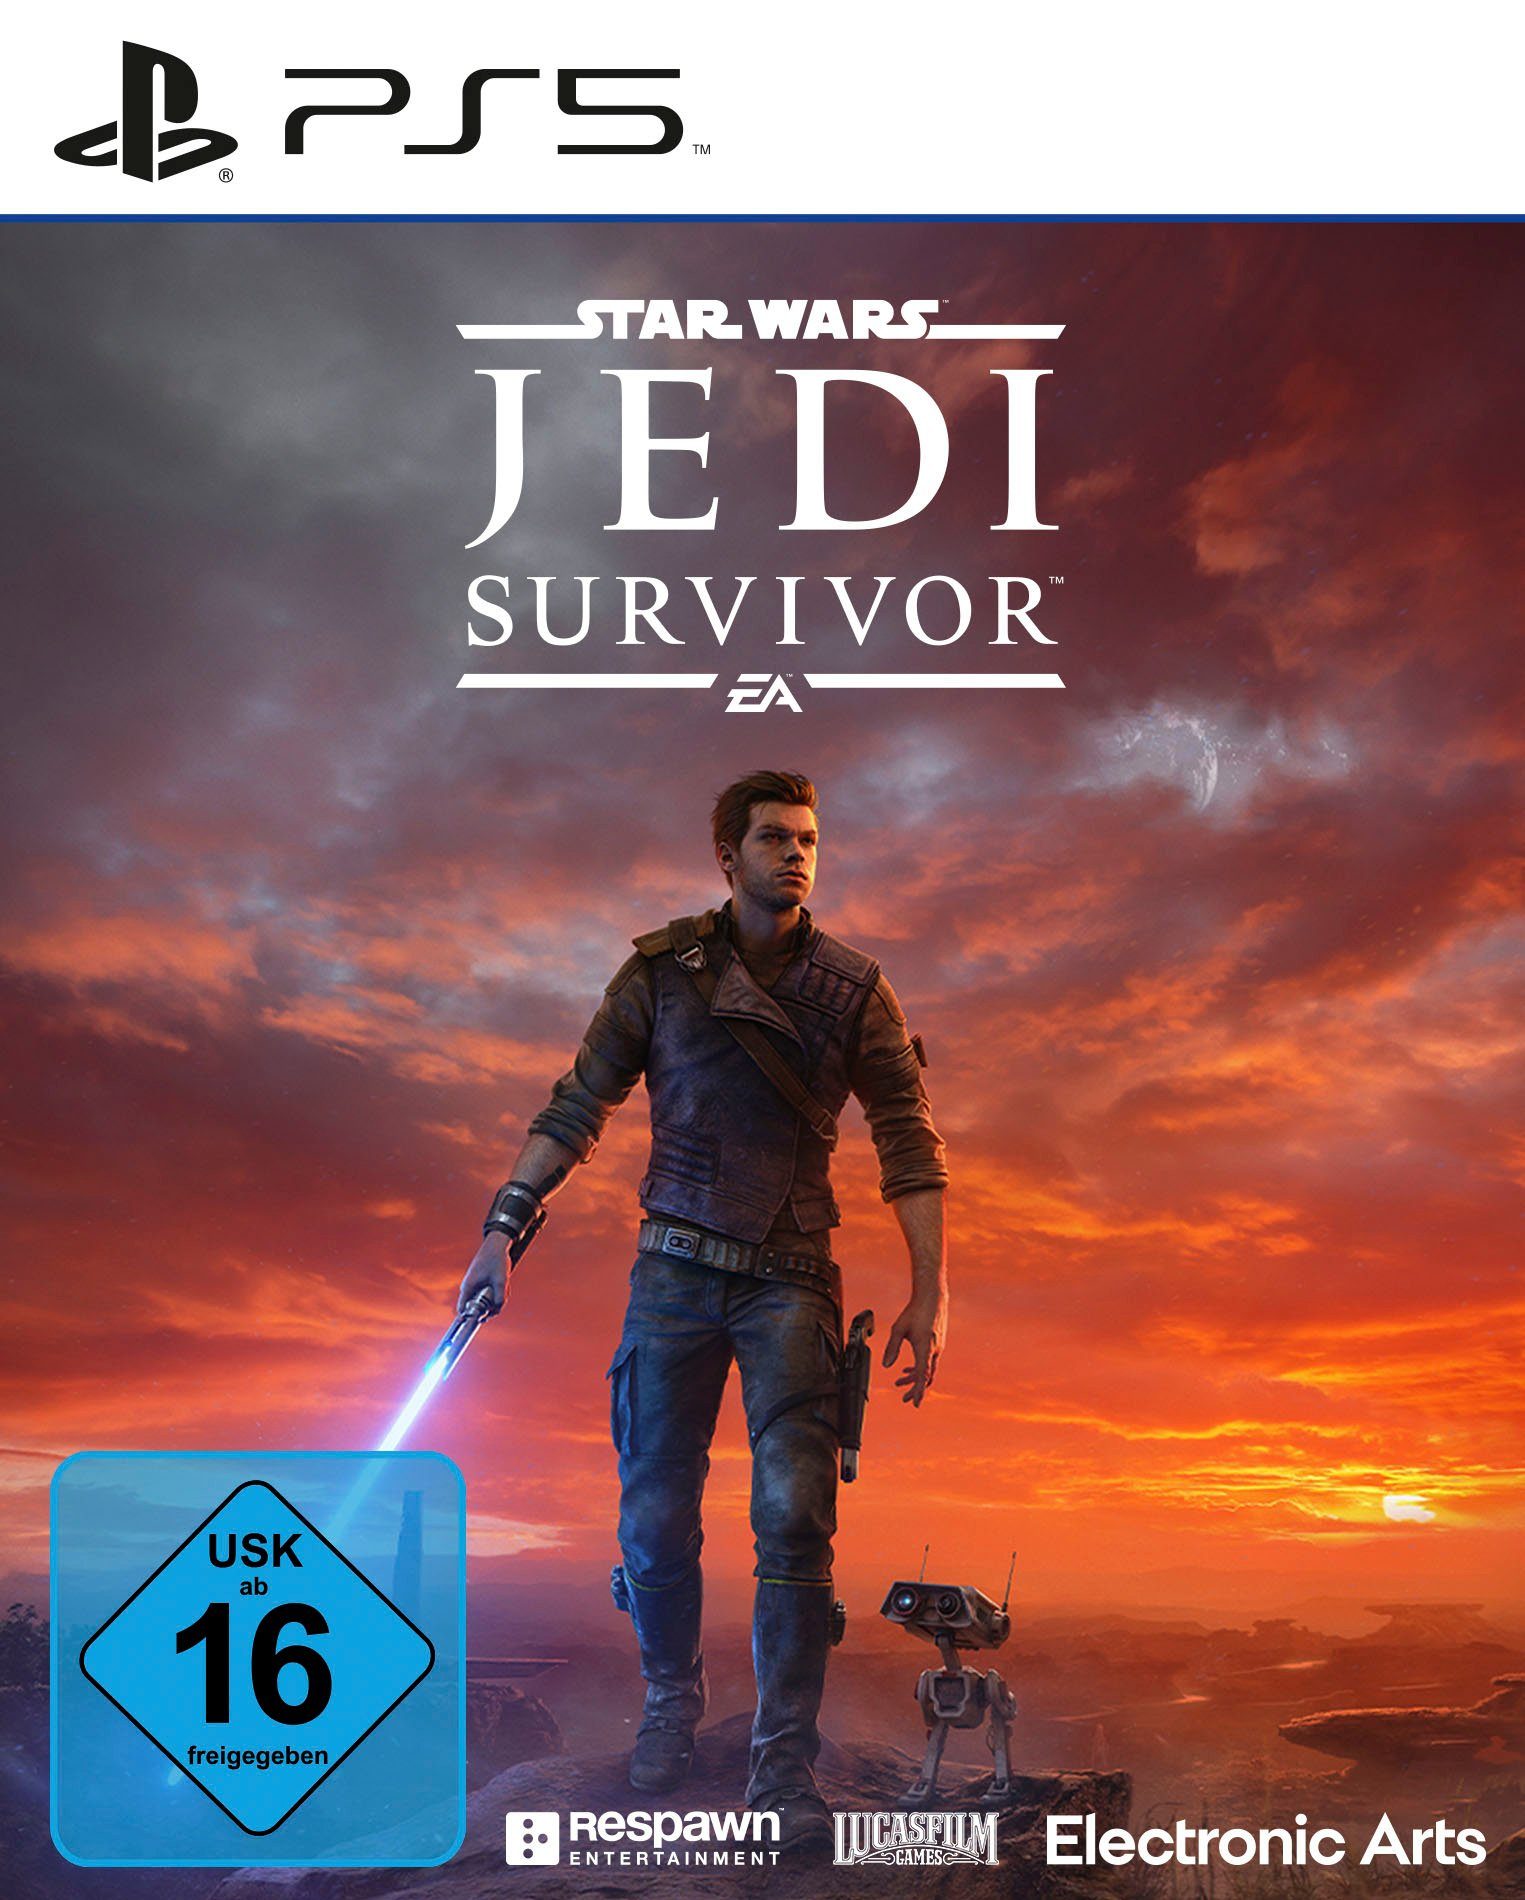 Wars: Star Survivor 5 PlayStation EA Jedi